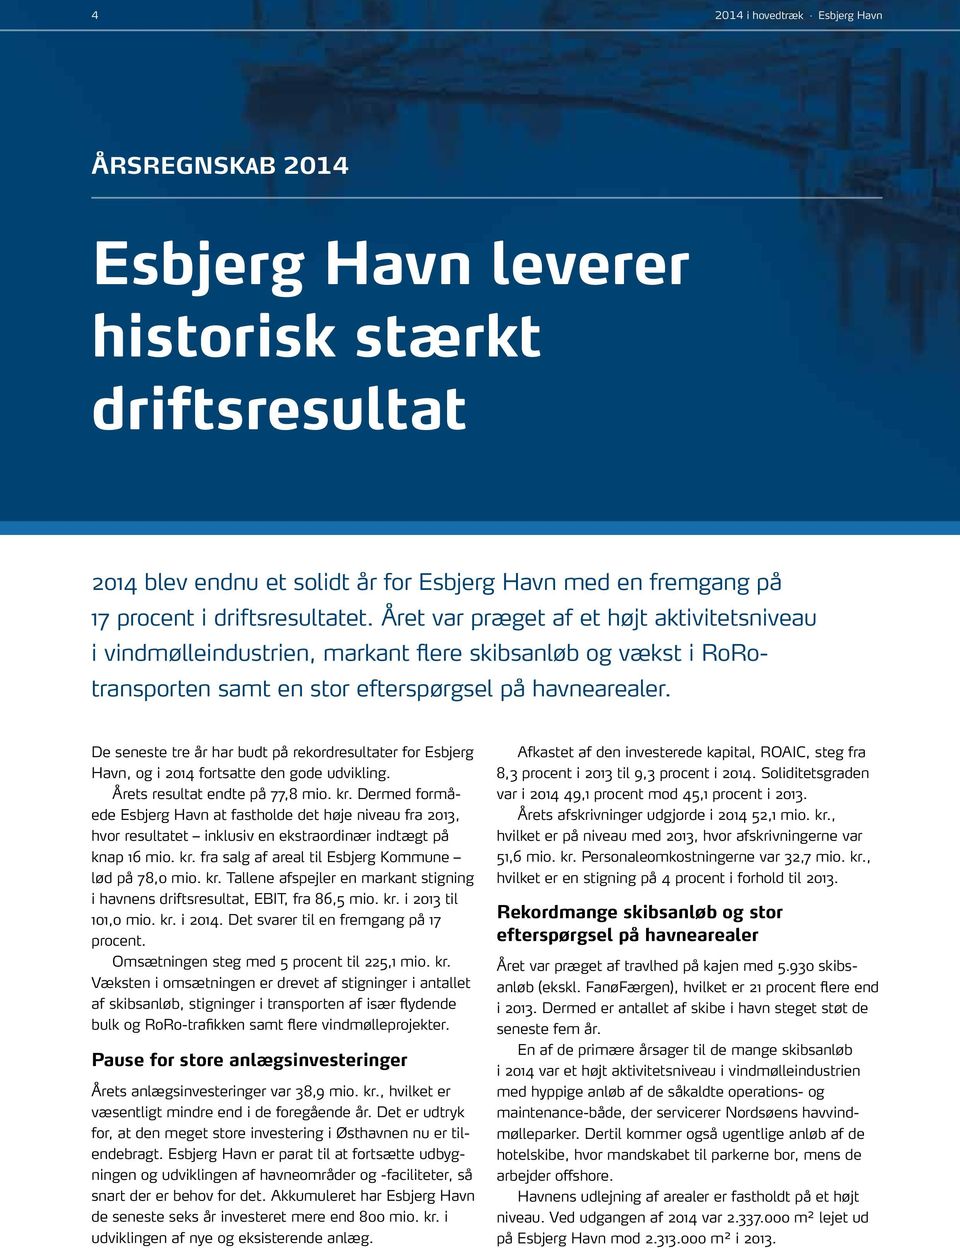 De seneste tre år har budt på rekordresultater for Esbjerg Havn, og i 2014 fortsatte den gode udvikling. Årets resultat endte på 77,8 mio. kr.